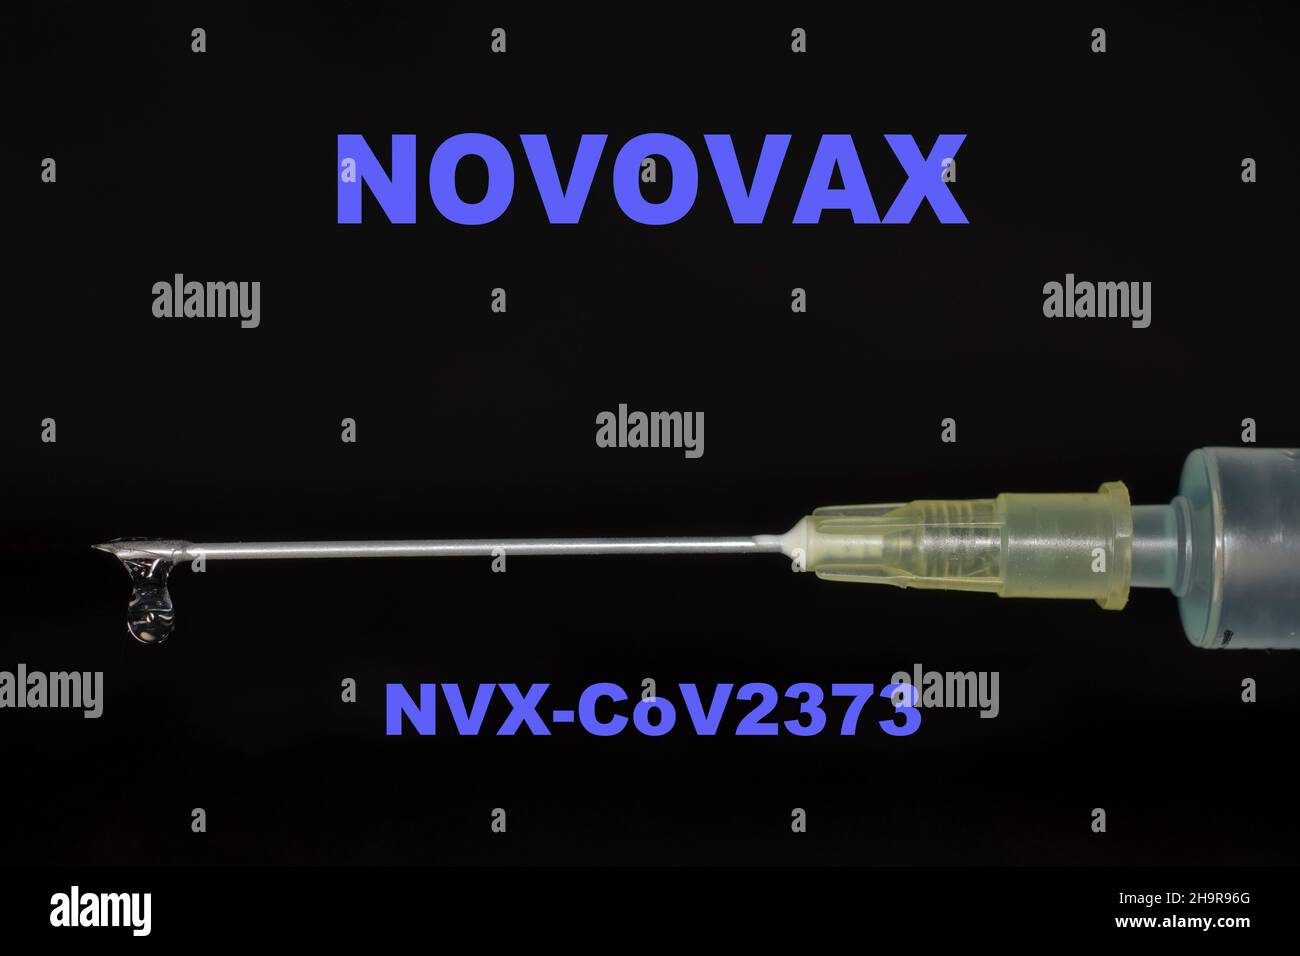 Injektionsspritze mit dem Impfstoff NVX CoV2373 von Novovax, Studiofotografie mit schwarzem Hintergrund Stockfoto